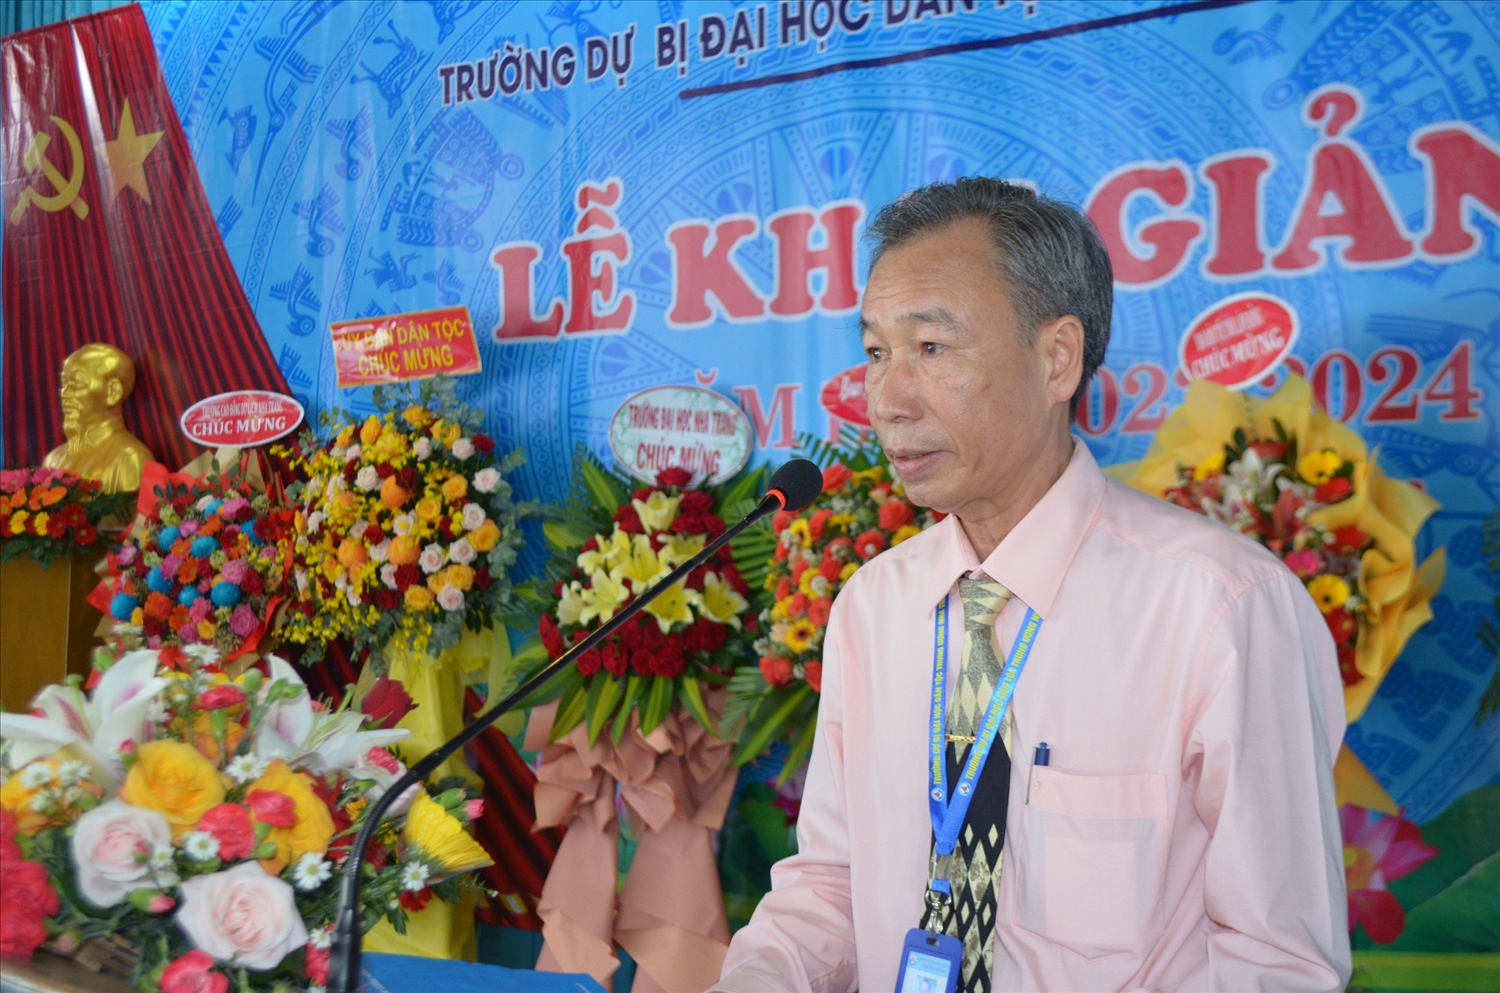 Ông Hoàng Trọng Ngô, Quyền hiệu trưởng Trường Dự bị Đại học Dân tộc Trung ương Nha Trang phát biểu tại Lễ khai giảng 